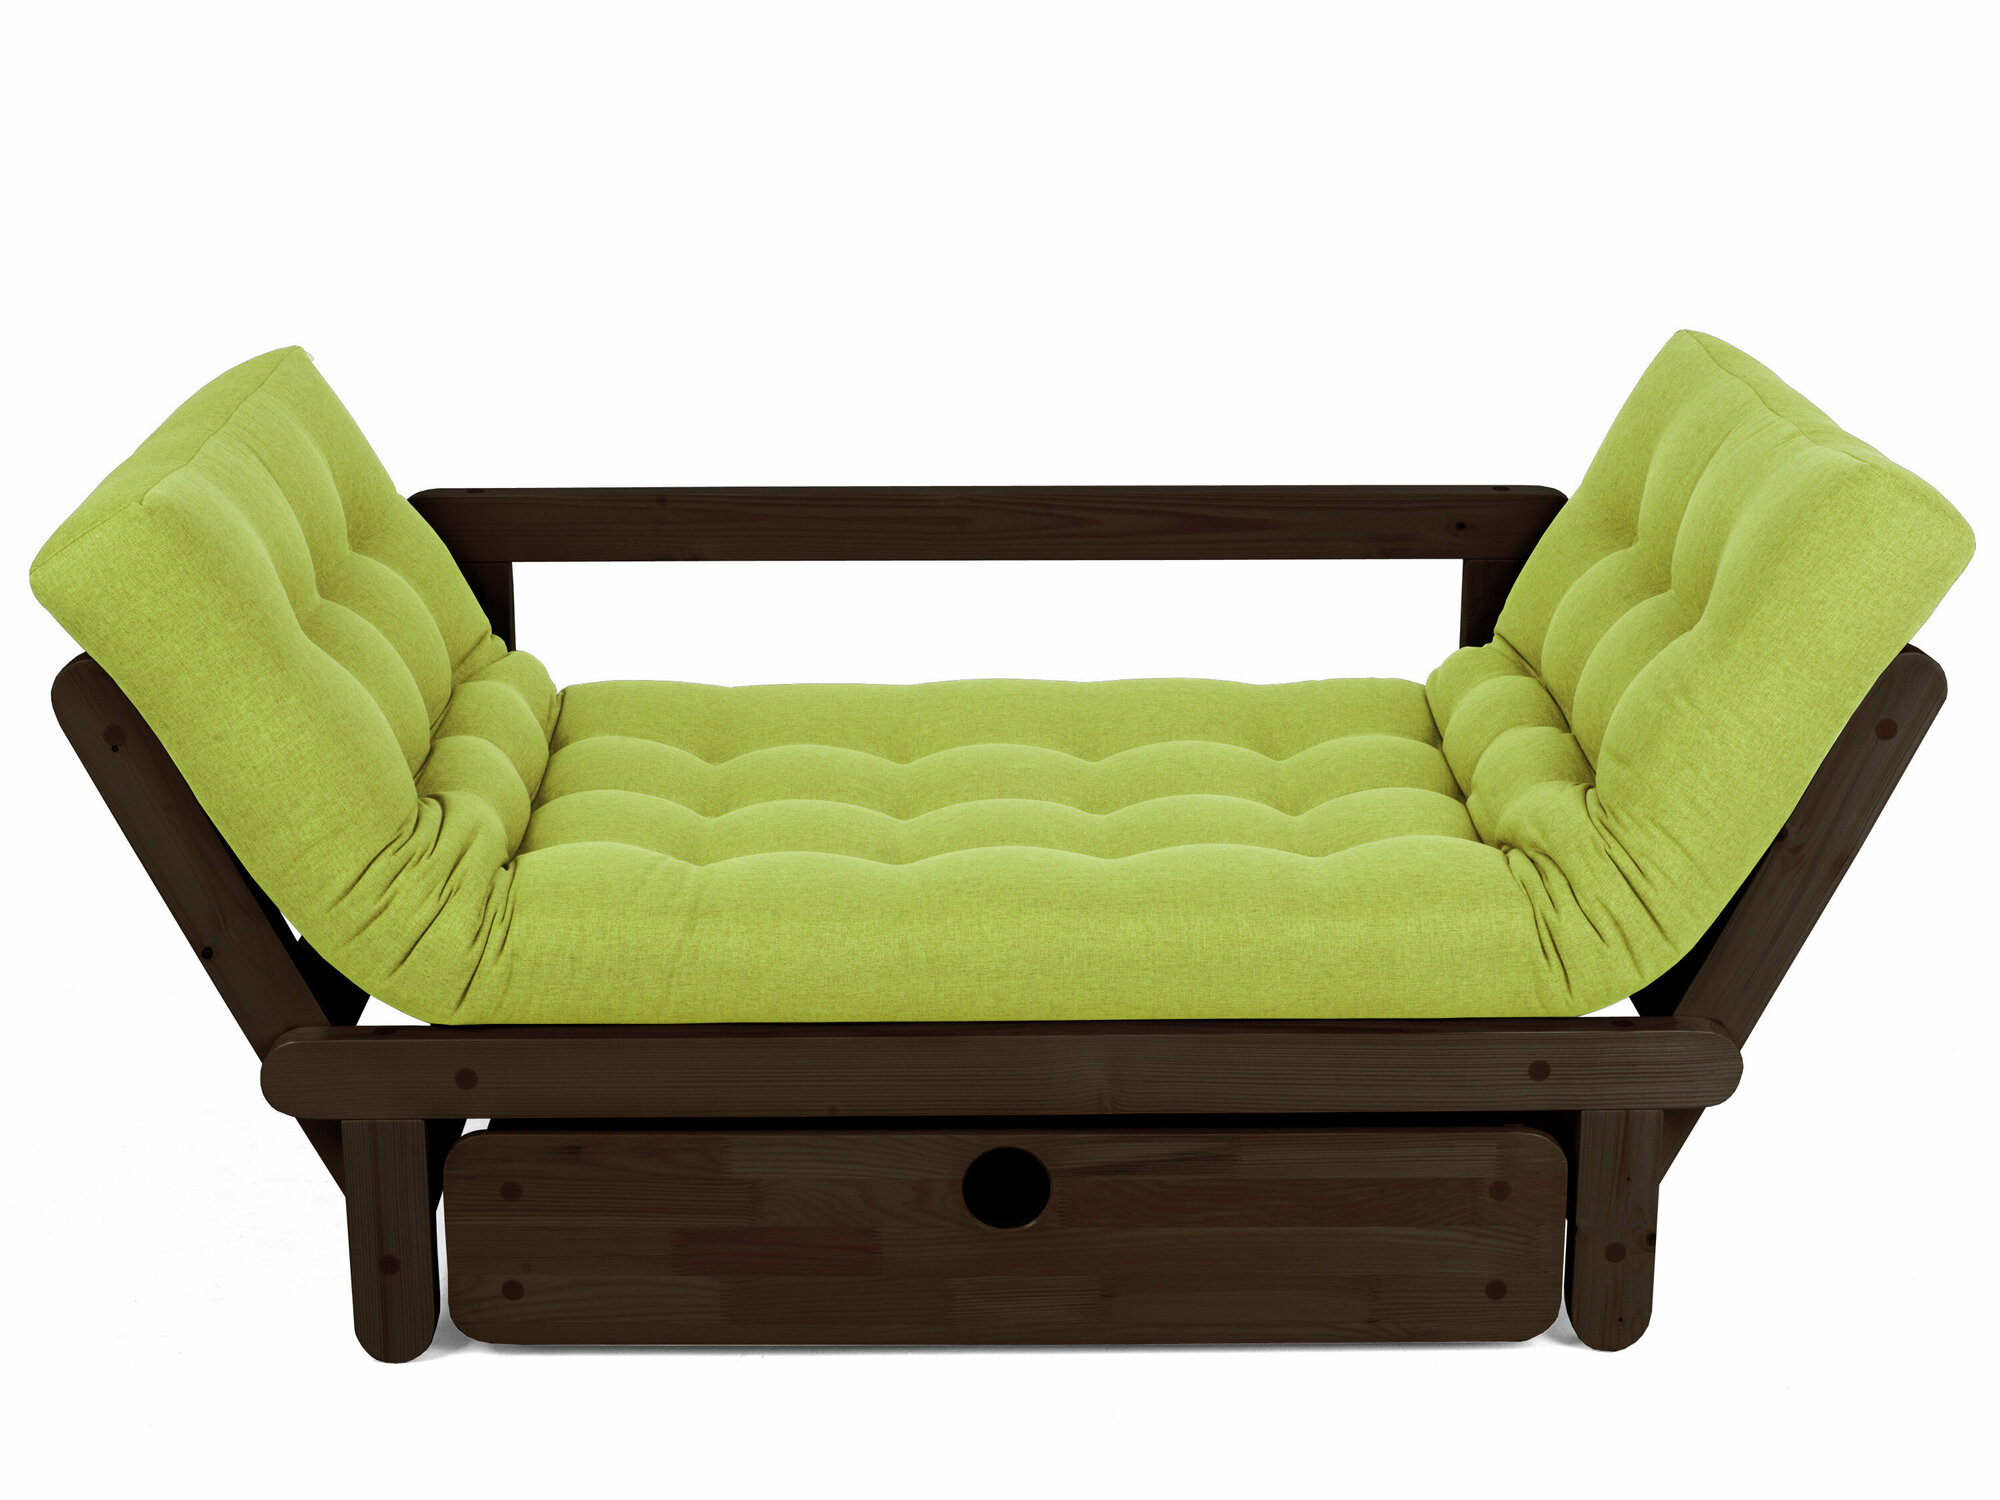 Садовый диван сламбер BOX-С, зеленый-венге, рогожка, двухместный, массив дерева, в офис, в салон красоты, на ножках, скандинавский лофт